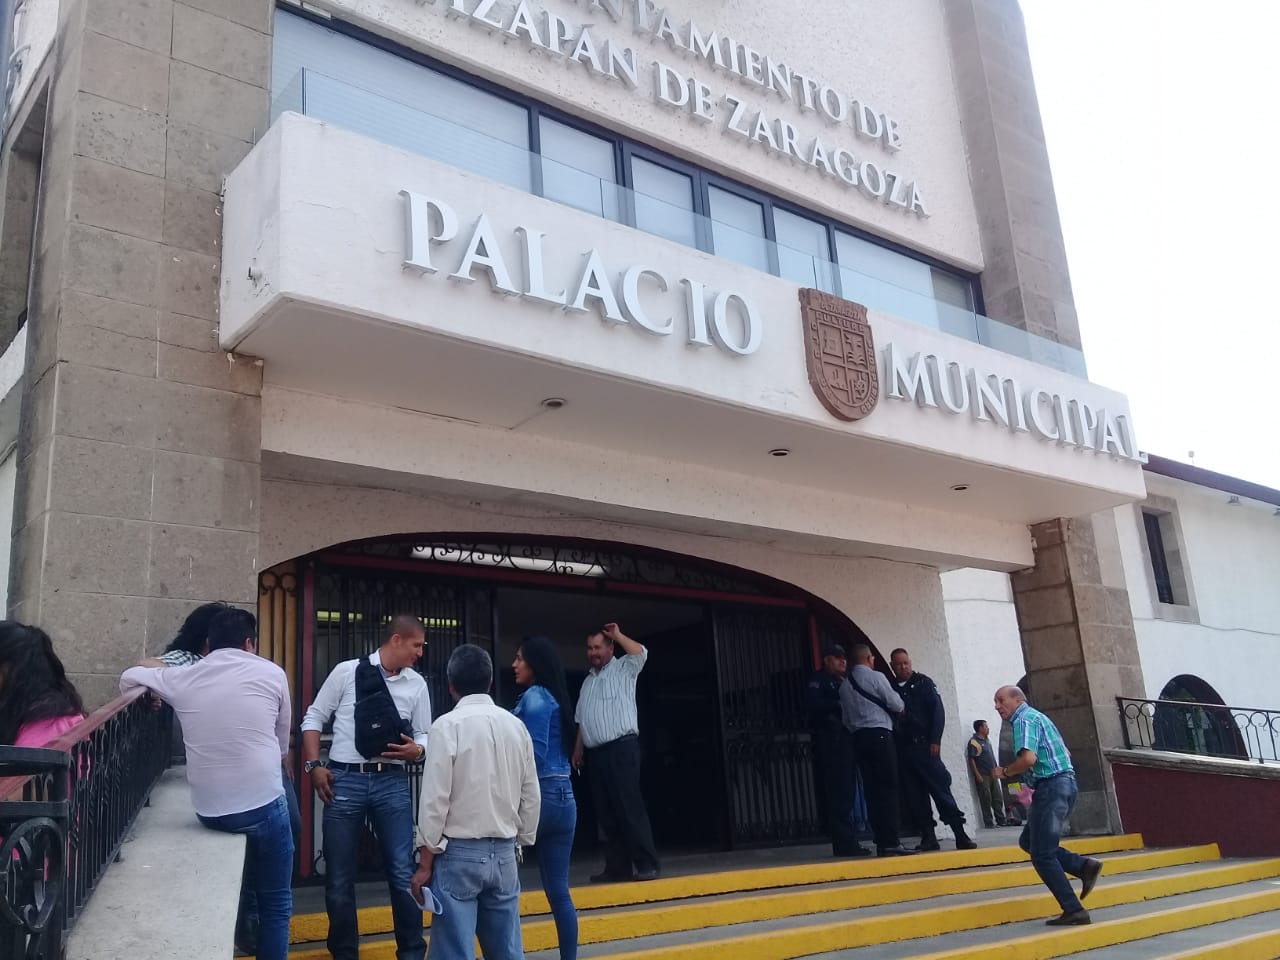 Se cuentan con las autorizaciones y se harán denuncias por los daños: Gobierno municipal respecto a sucesos en Lomas de Atizapán #regionmx